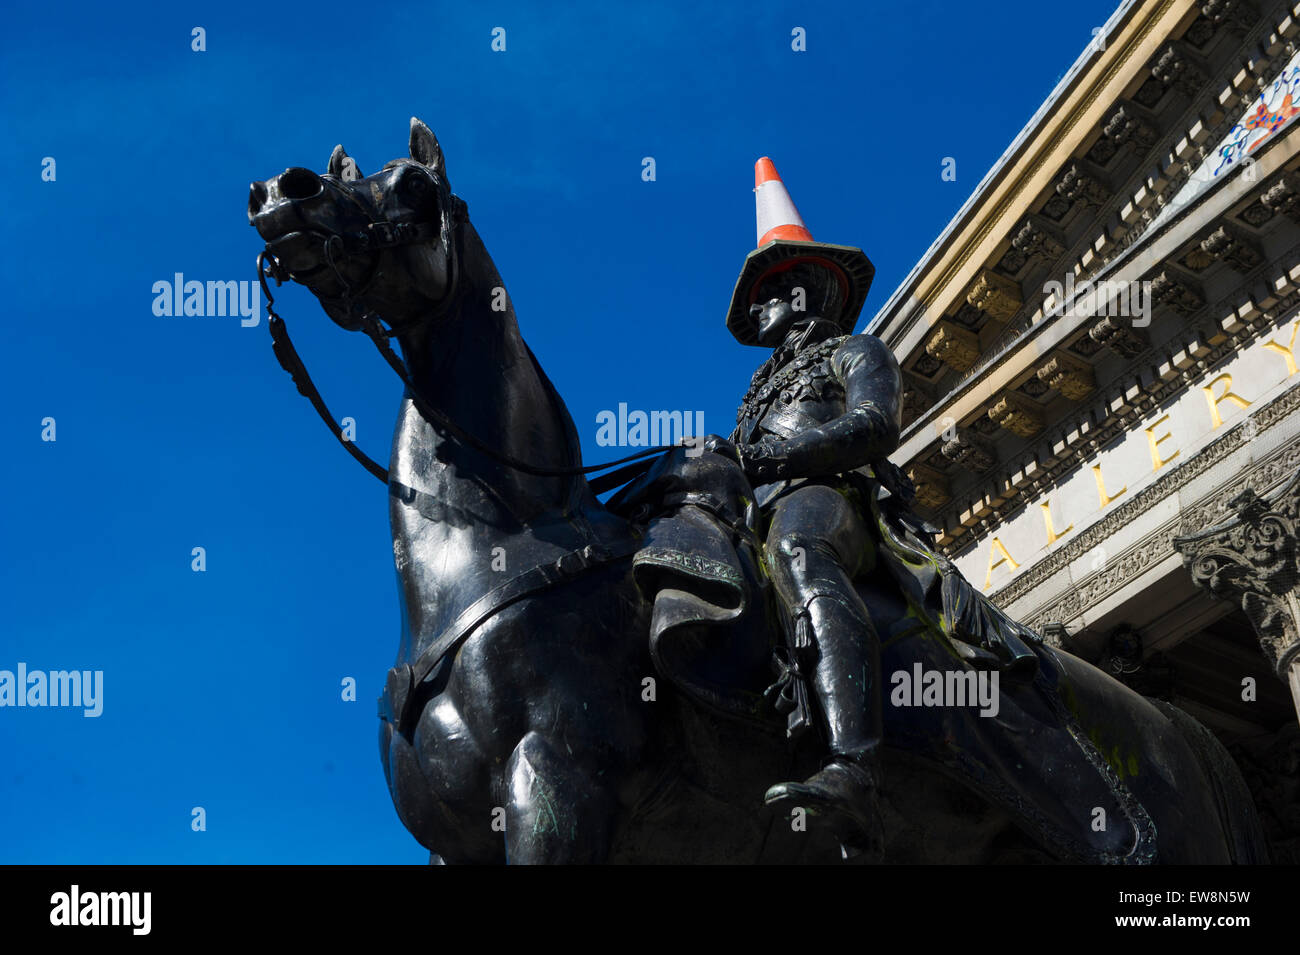 Estatua del Duque de Wellington, con conos de tráfico fuera del Museo de Arte Moderno de Glasgow, Escocia, con un cono de tráfico sobre su cabeza. Foto de stock